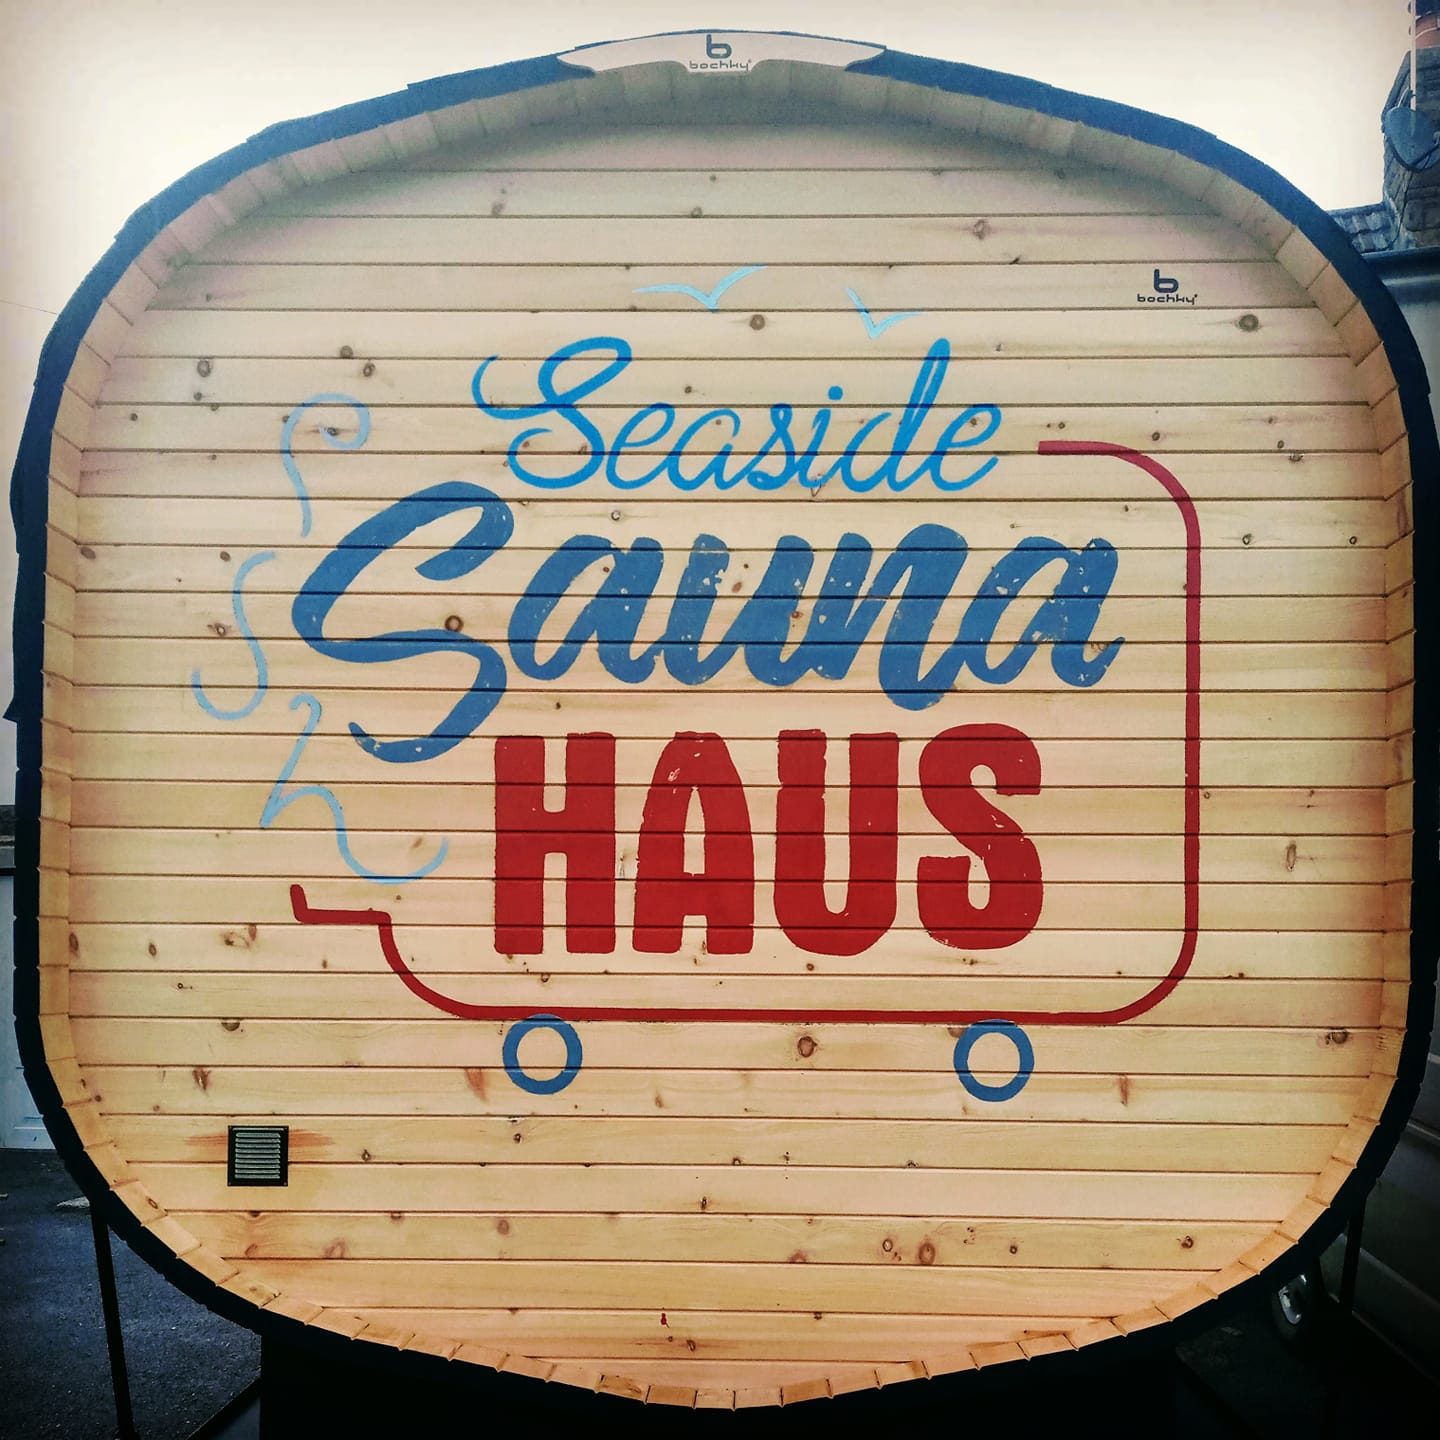 SeasideSaunaHaus seaside sauna haus logo uk 1 1